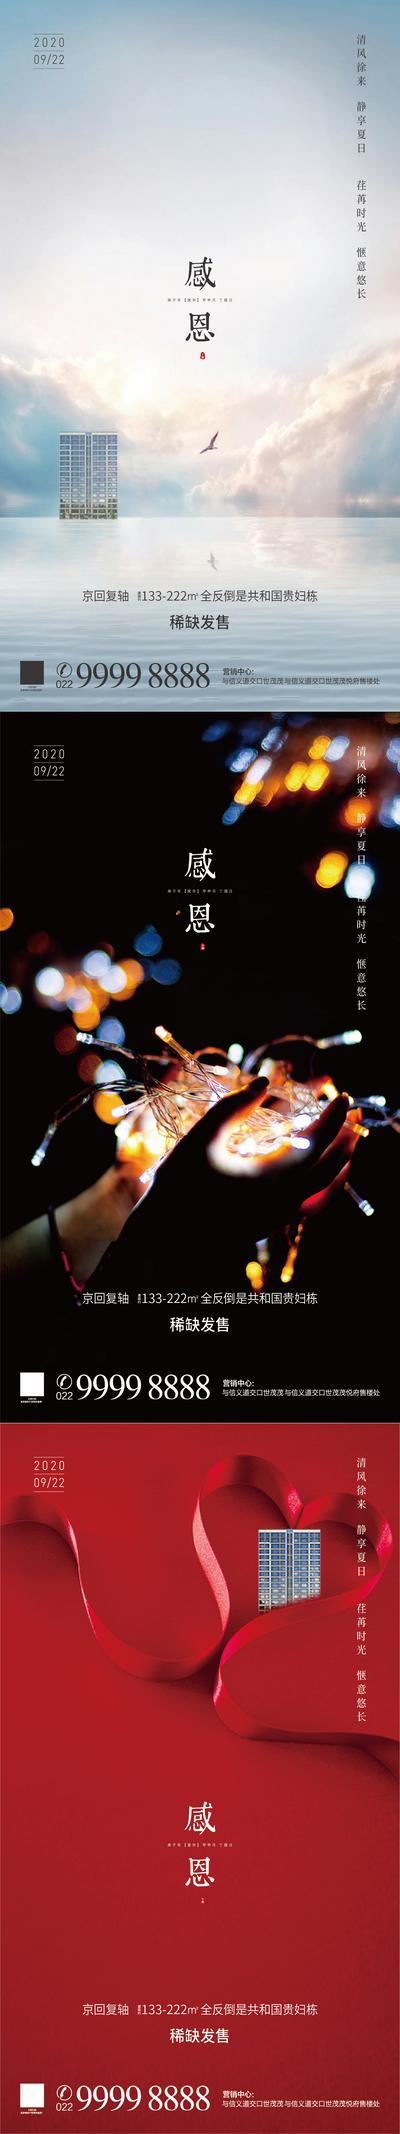 南门网 海报  房地产  系列  感恩节  公历节日    建筑  爱心  彩带  彩灯